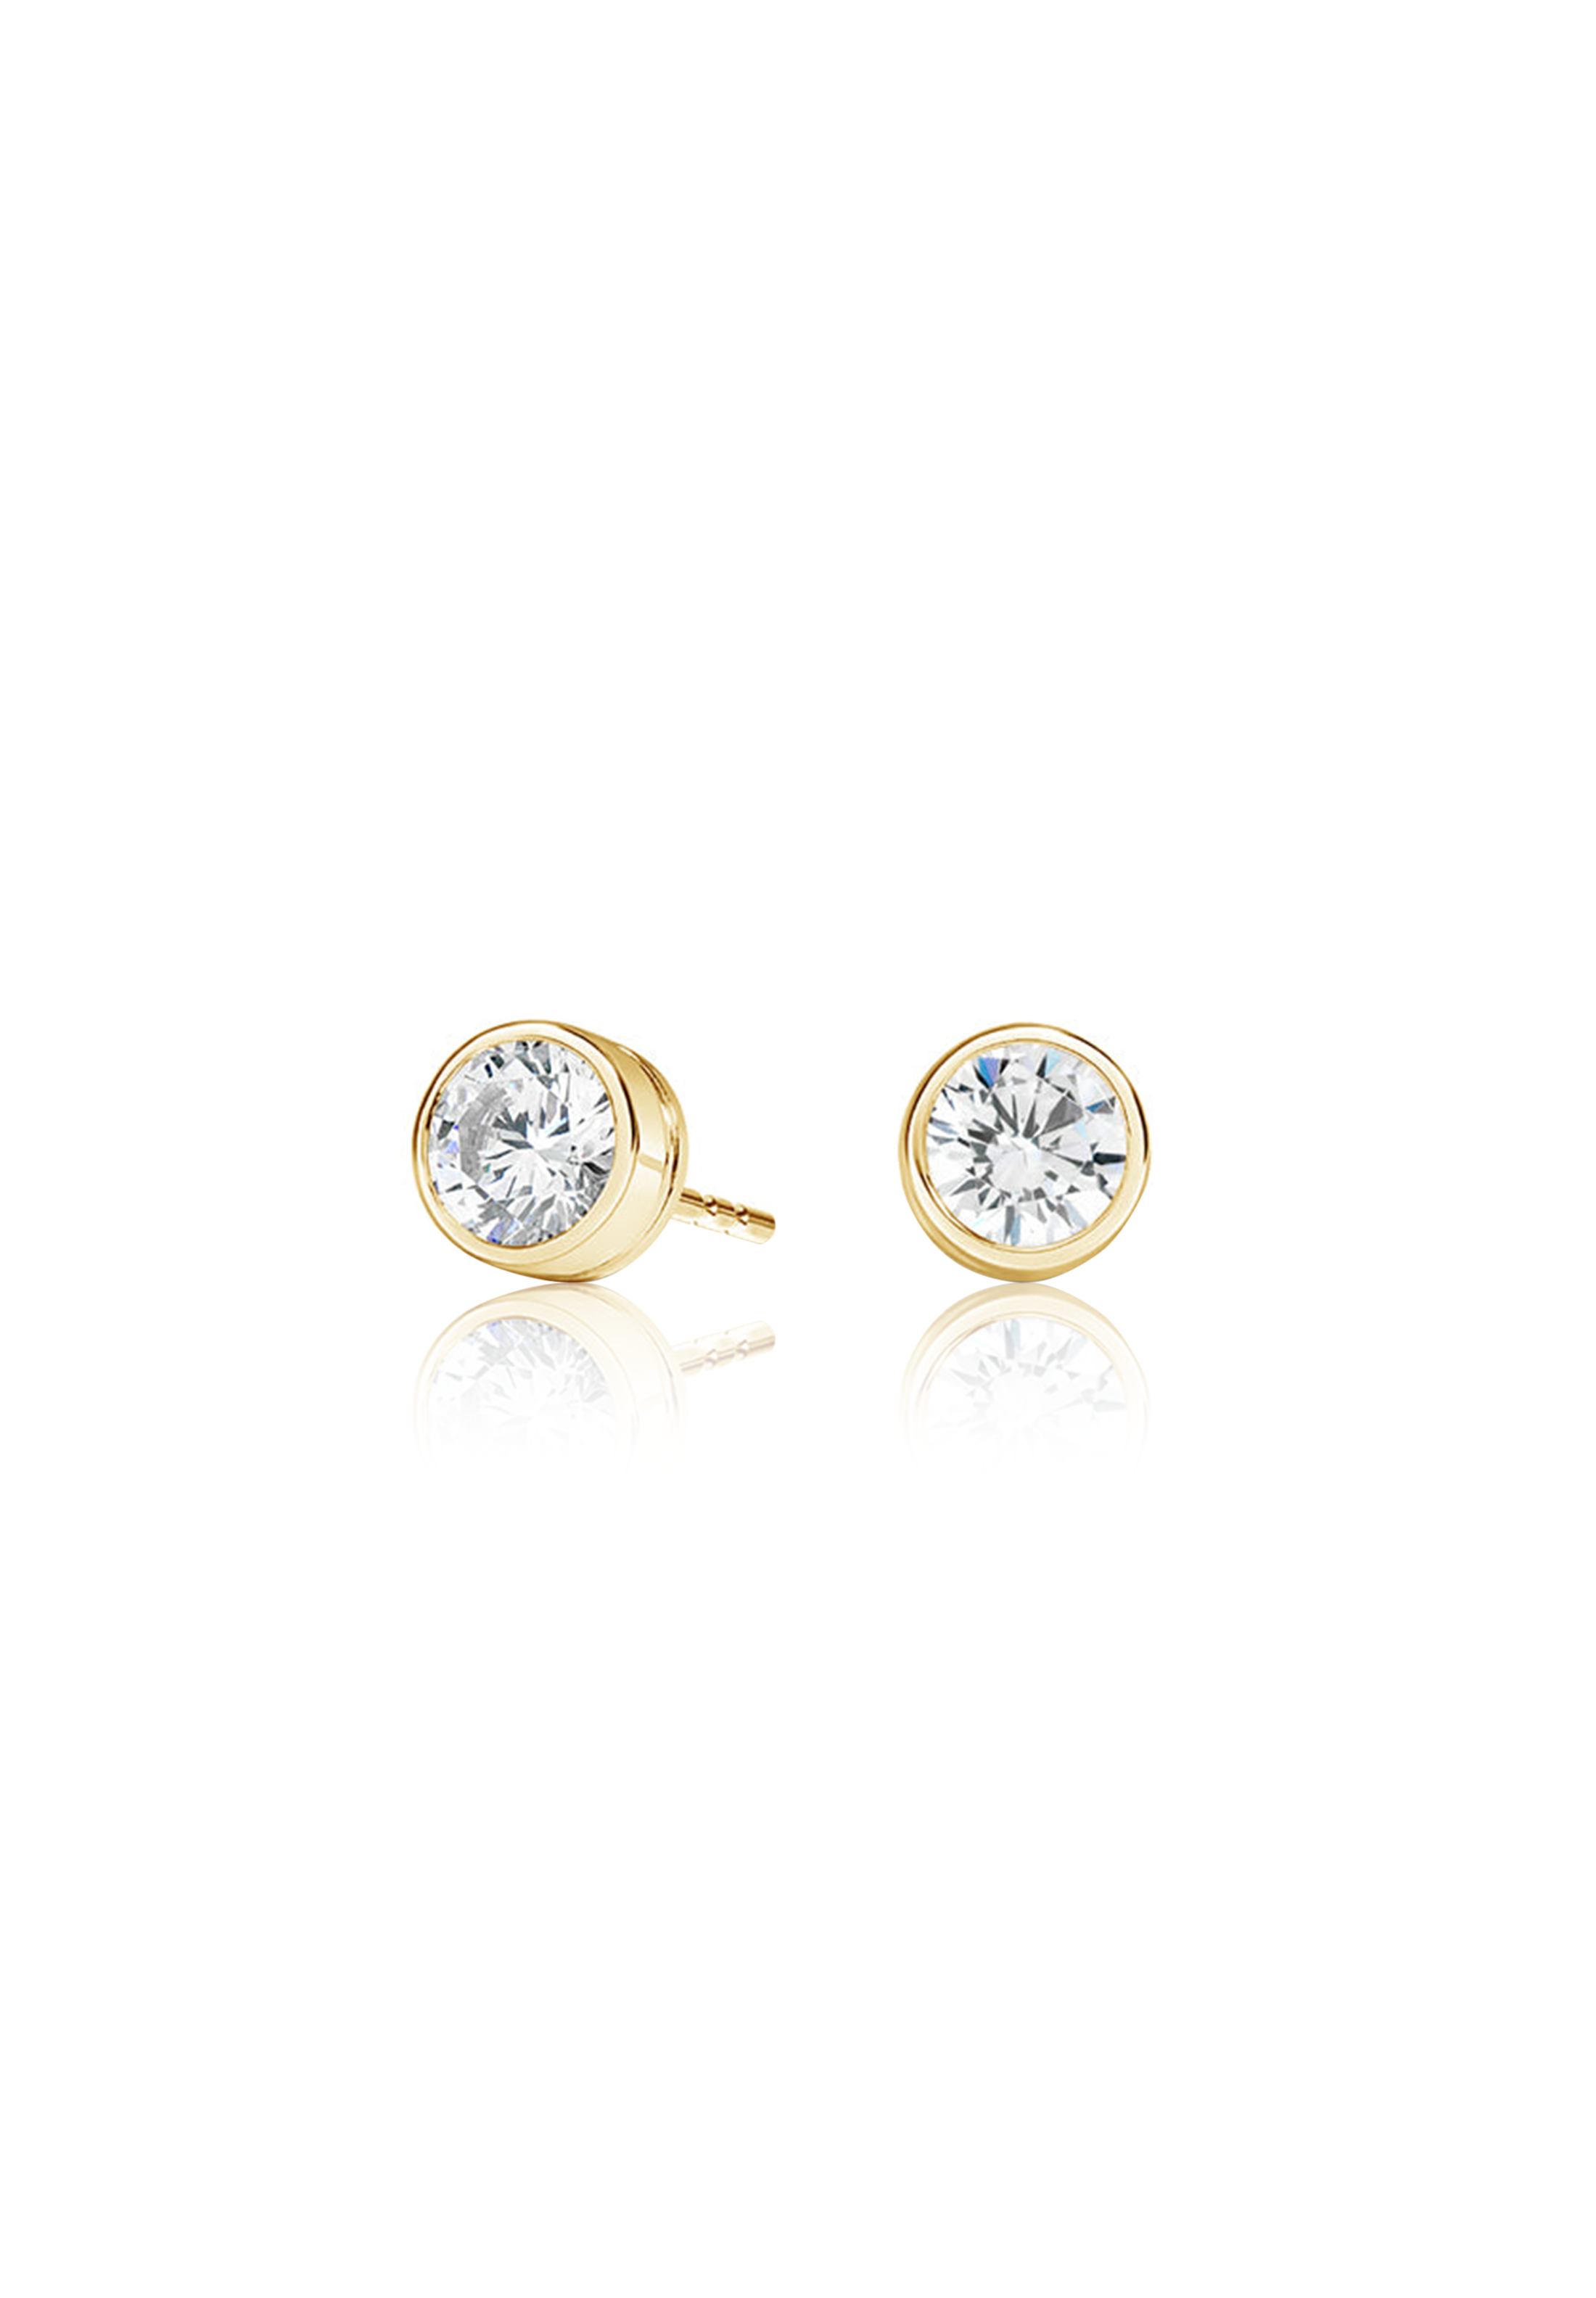 Round Cut Diamond Earrings 0.5 Carat (Bezel Set) - Fenom & Co.